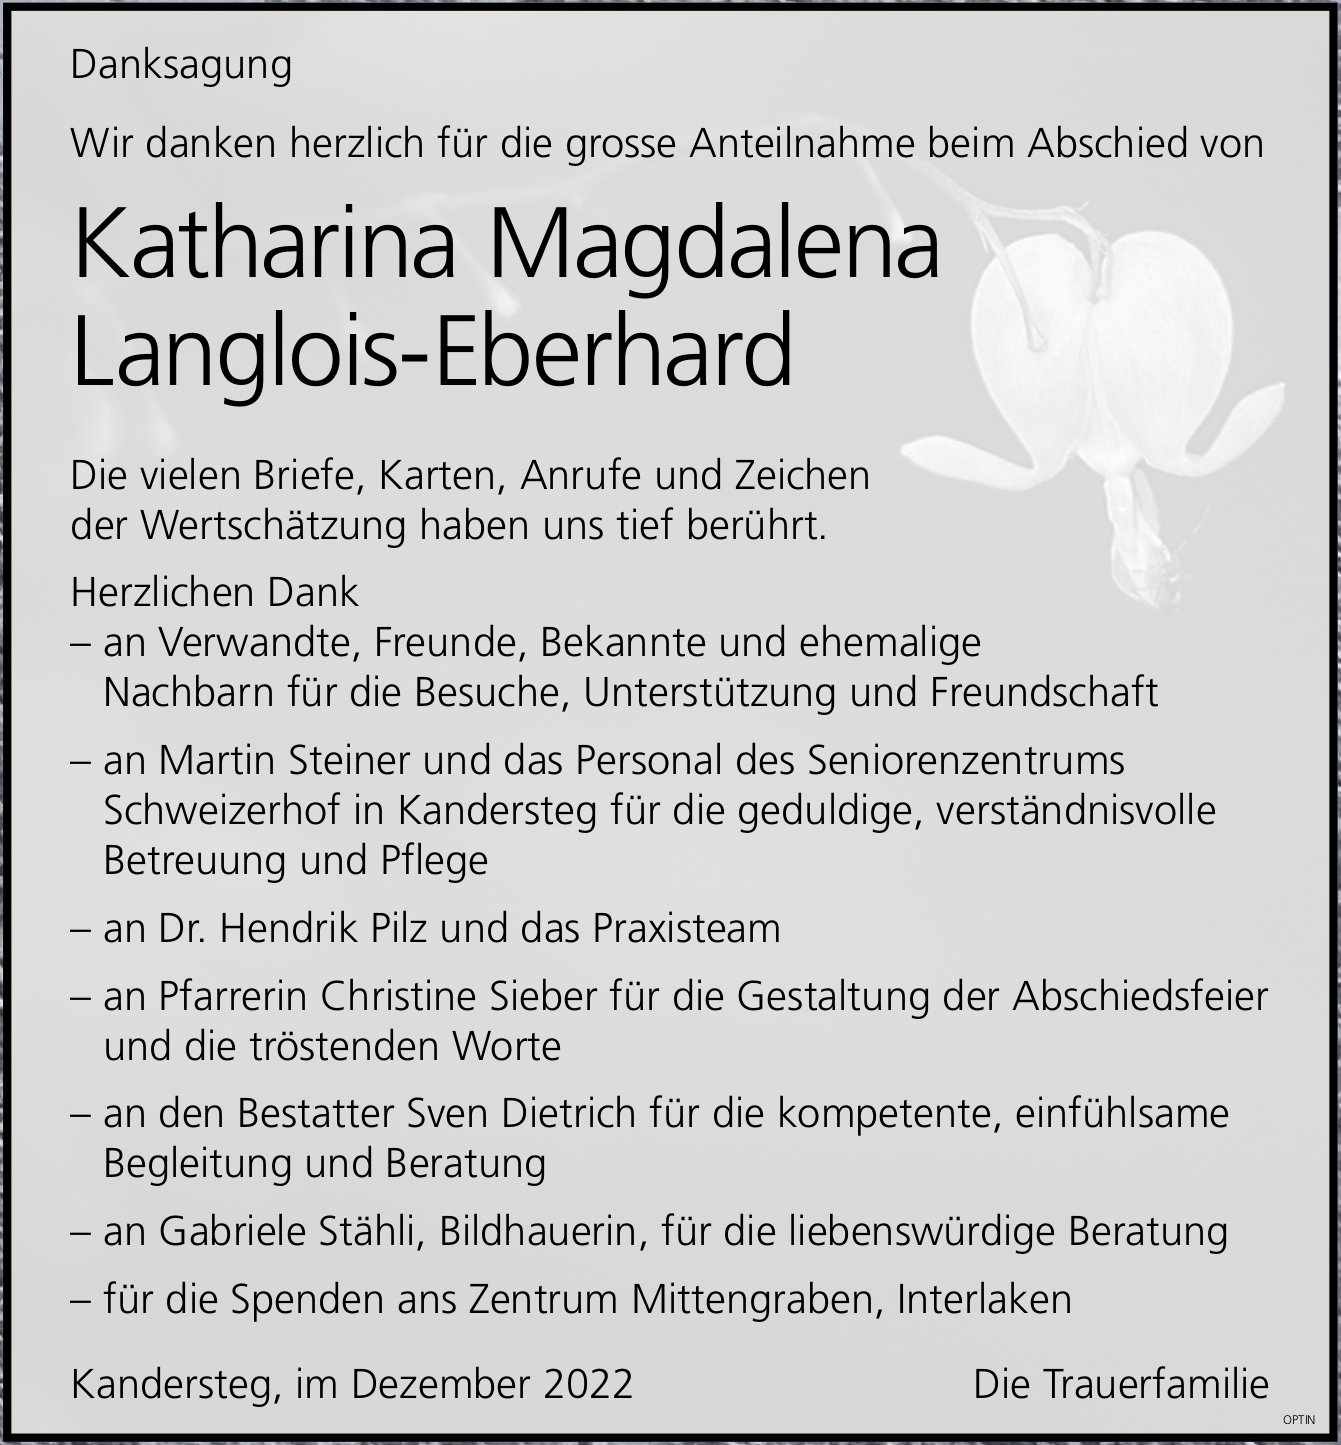 Katharina Magdalena Langlois-Eberhard, im Dezember 2022 / DS